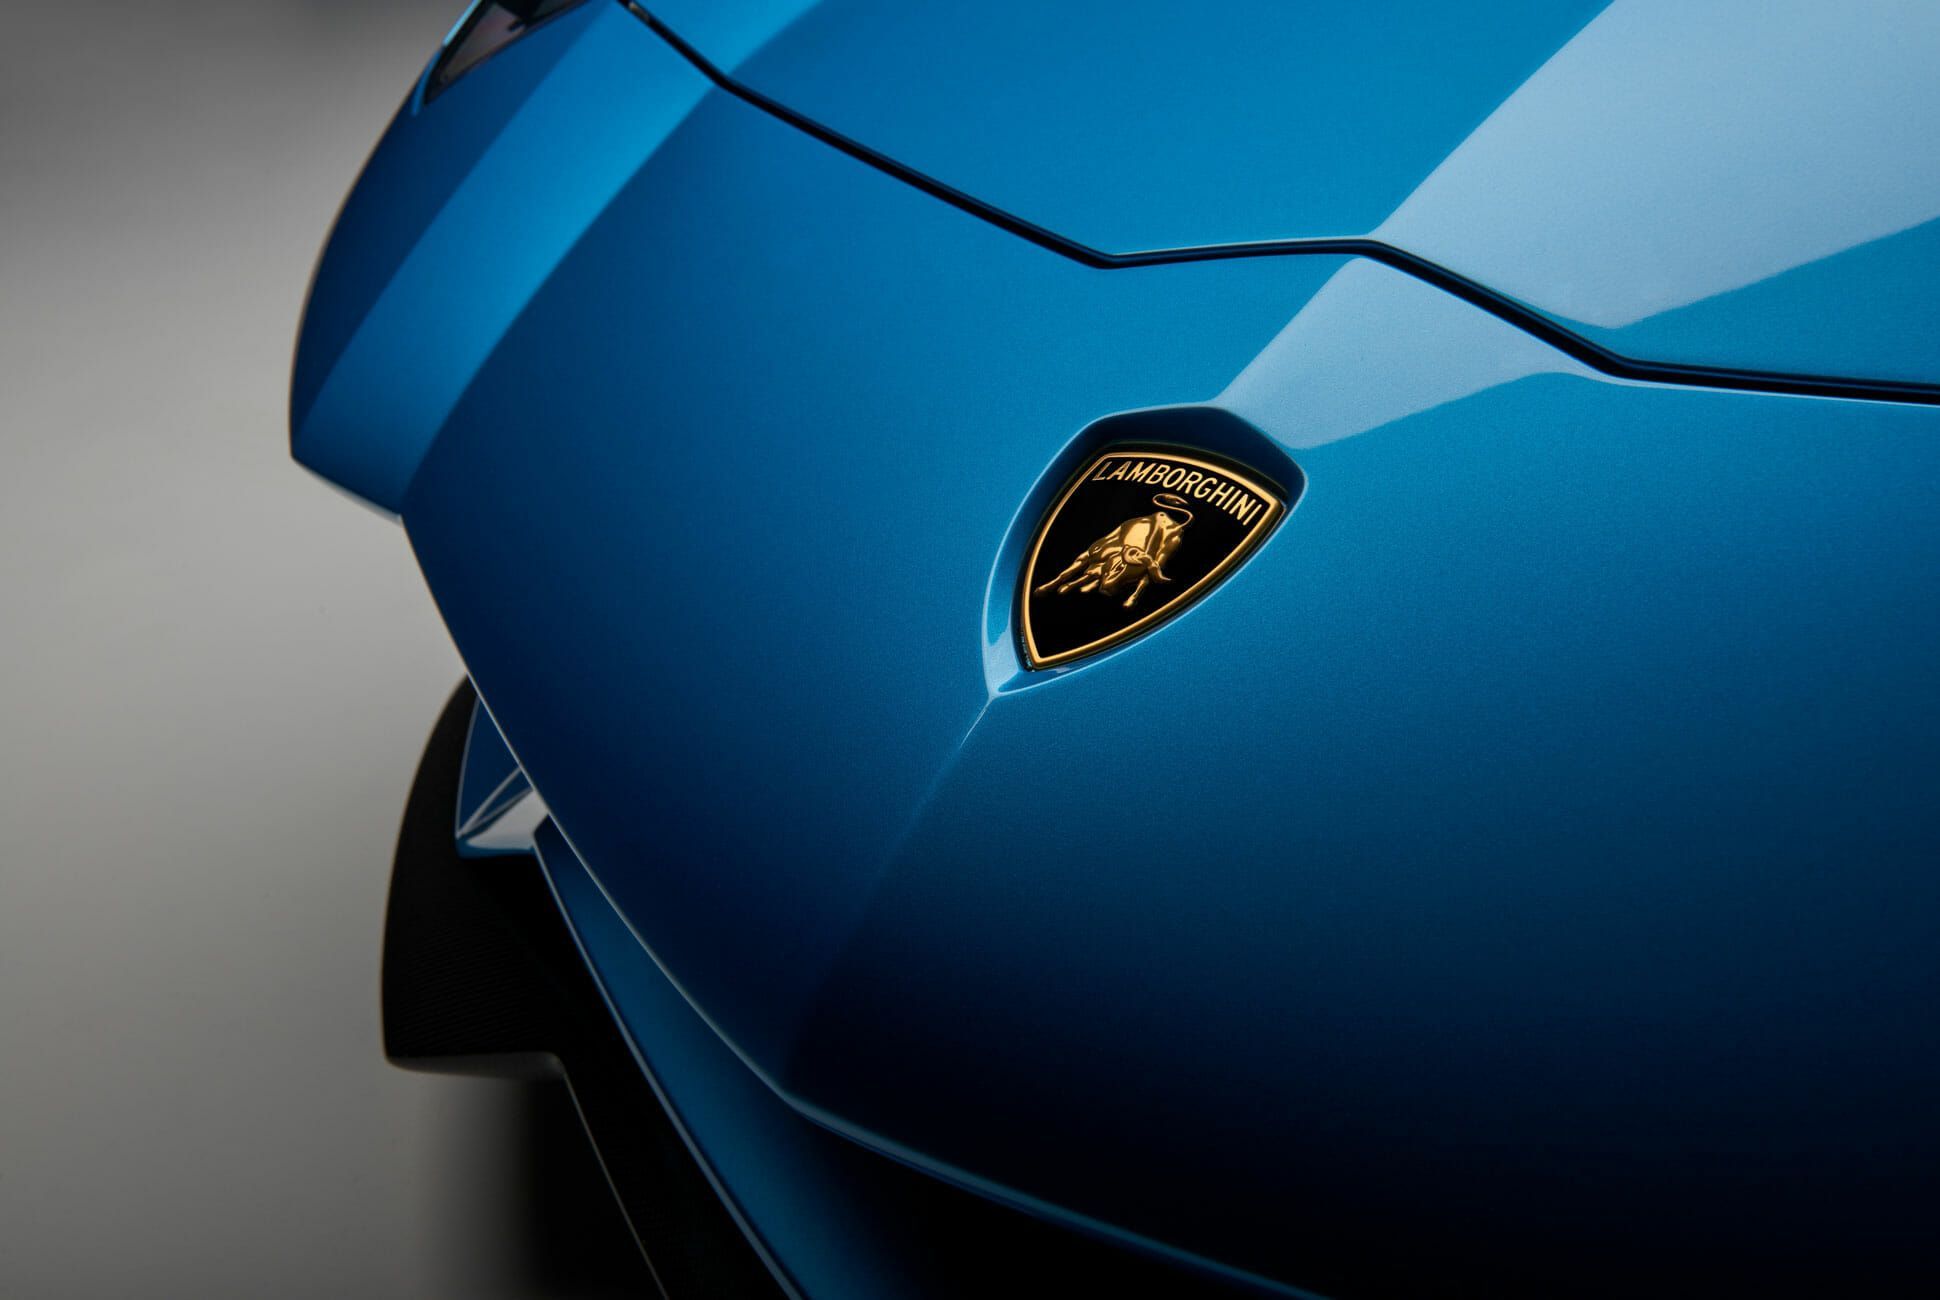 An Image Of A Blue Lamborghini